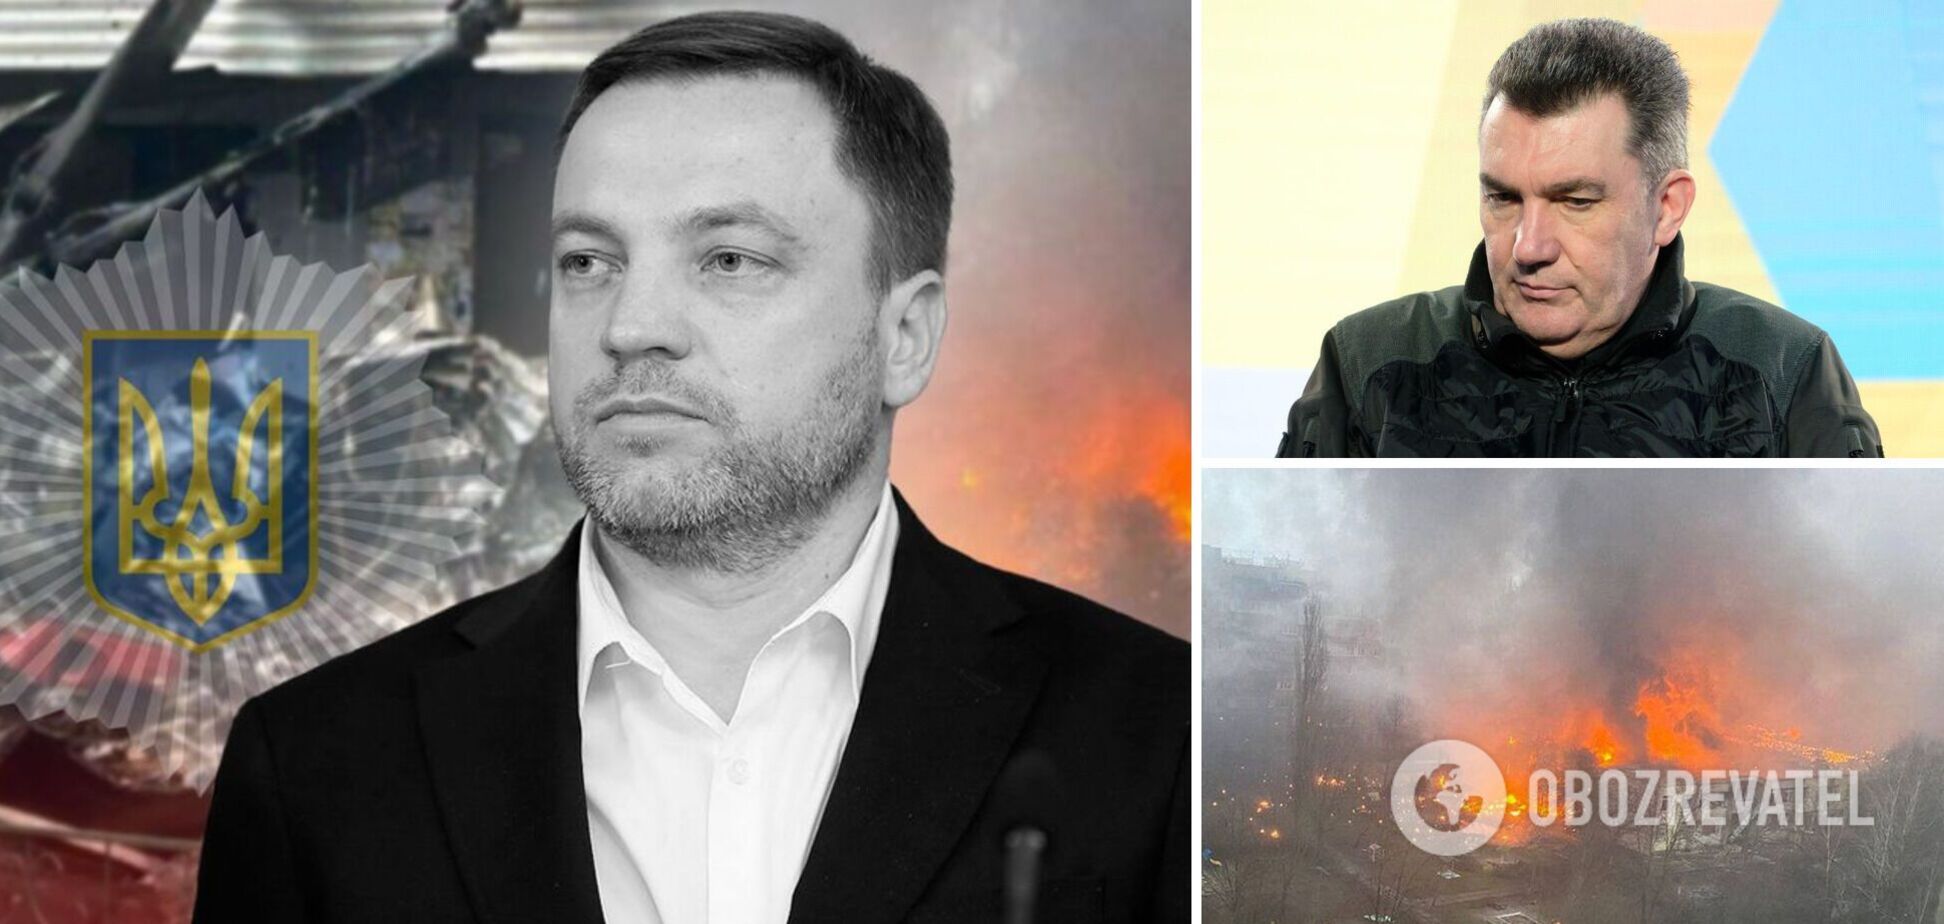 Данилов рассказал о последнем смс от Монастырского в день авиакатастрофы в Броварах: глава МВД должен был выйти на связь из Полтавы